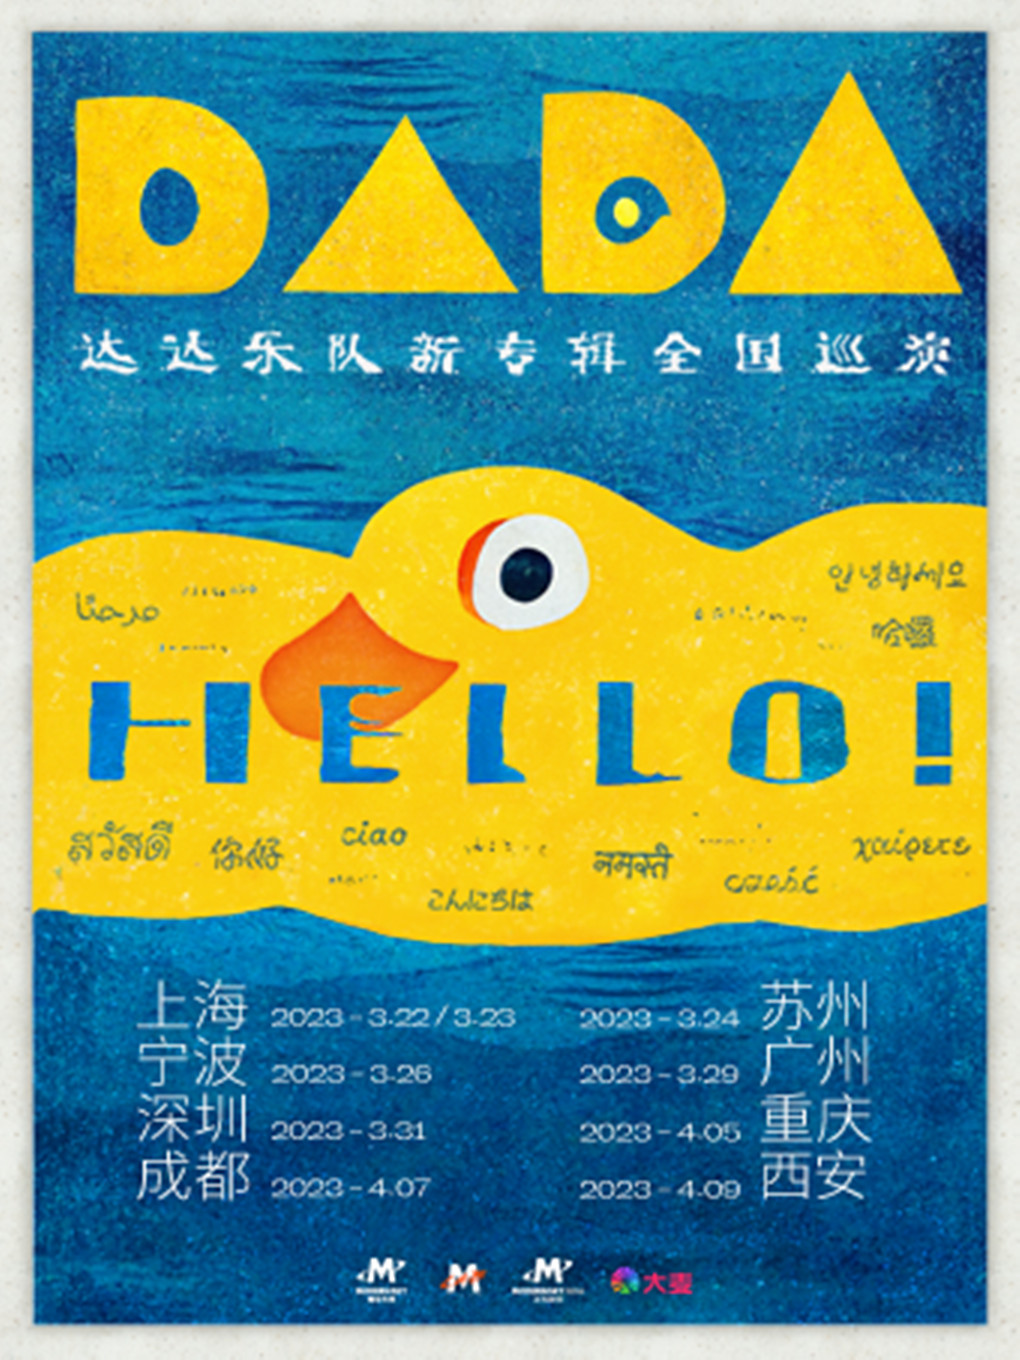 「Hello！」——达达乐队新专辑全国巡演·西安站